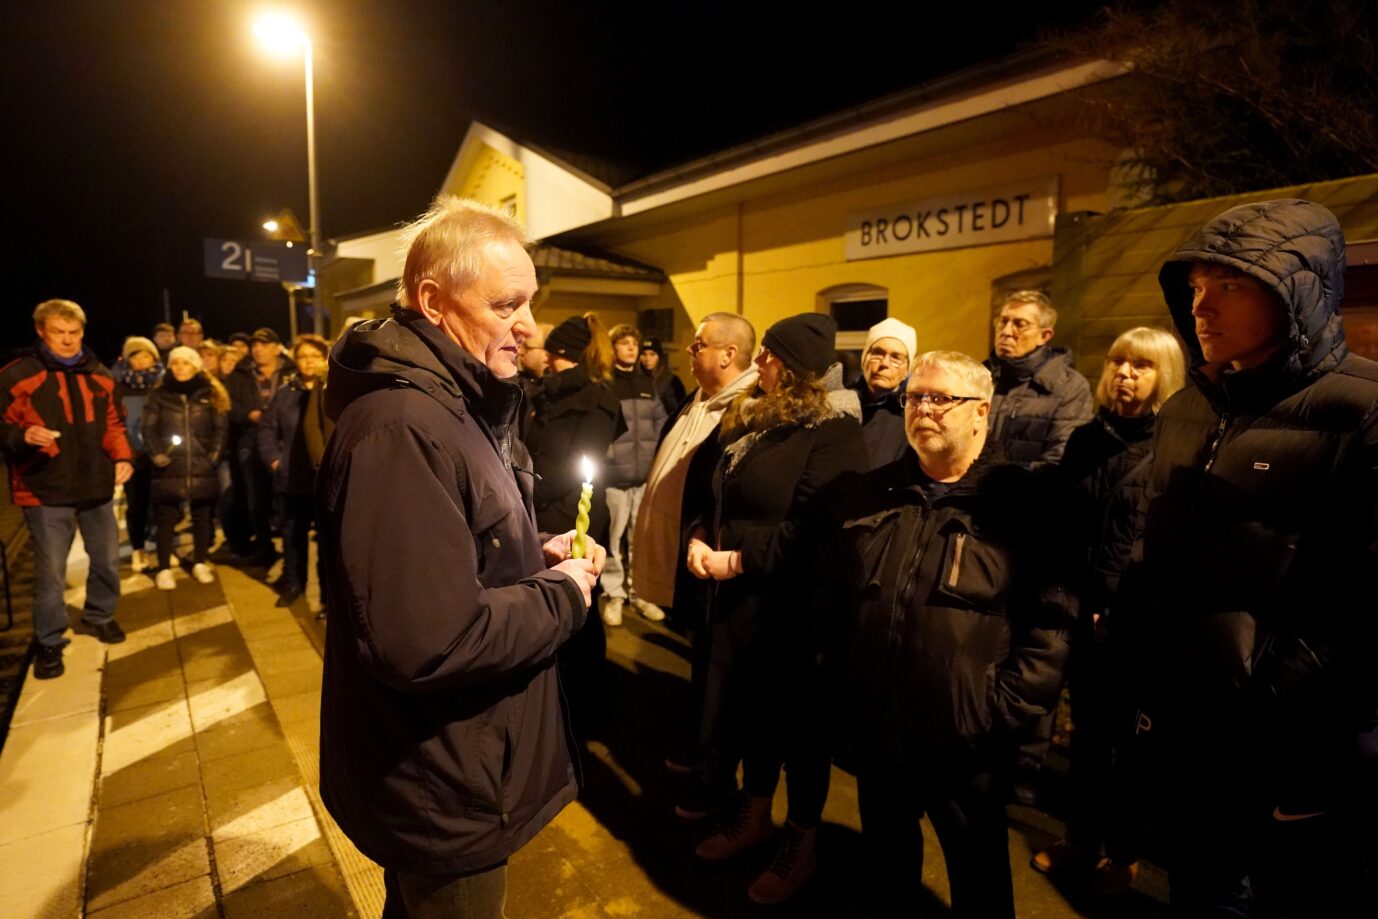 Bürgermeister Clemens Preine (CDU) spricht bei einer Gedenkveranstaltung auf dem Bahnhof zu den Einwohnern von Brokstedt.